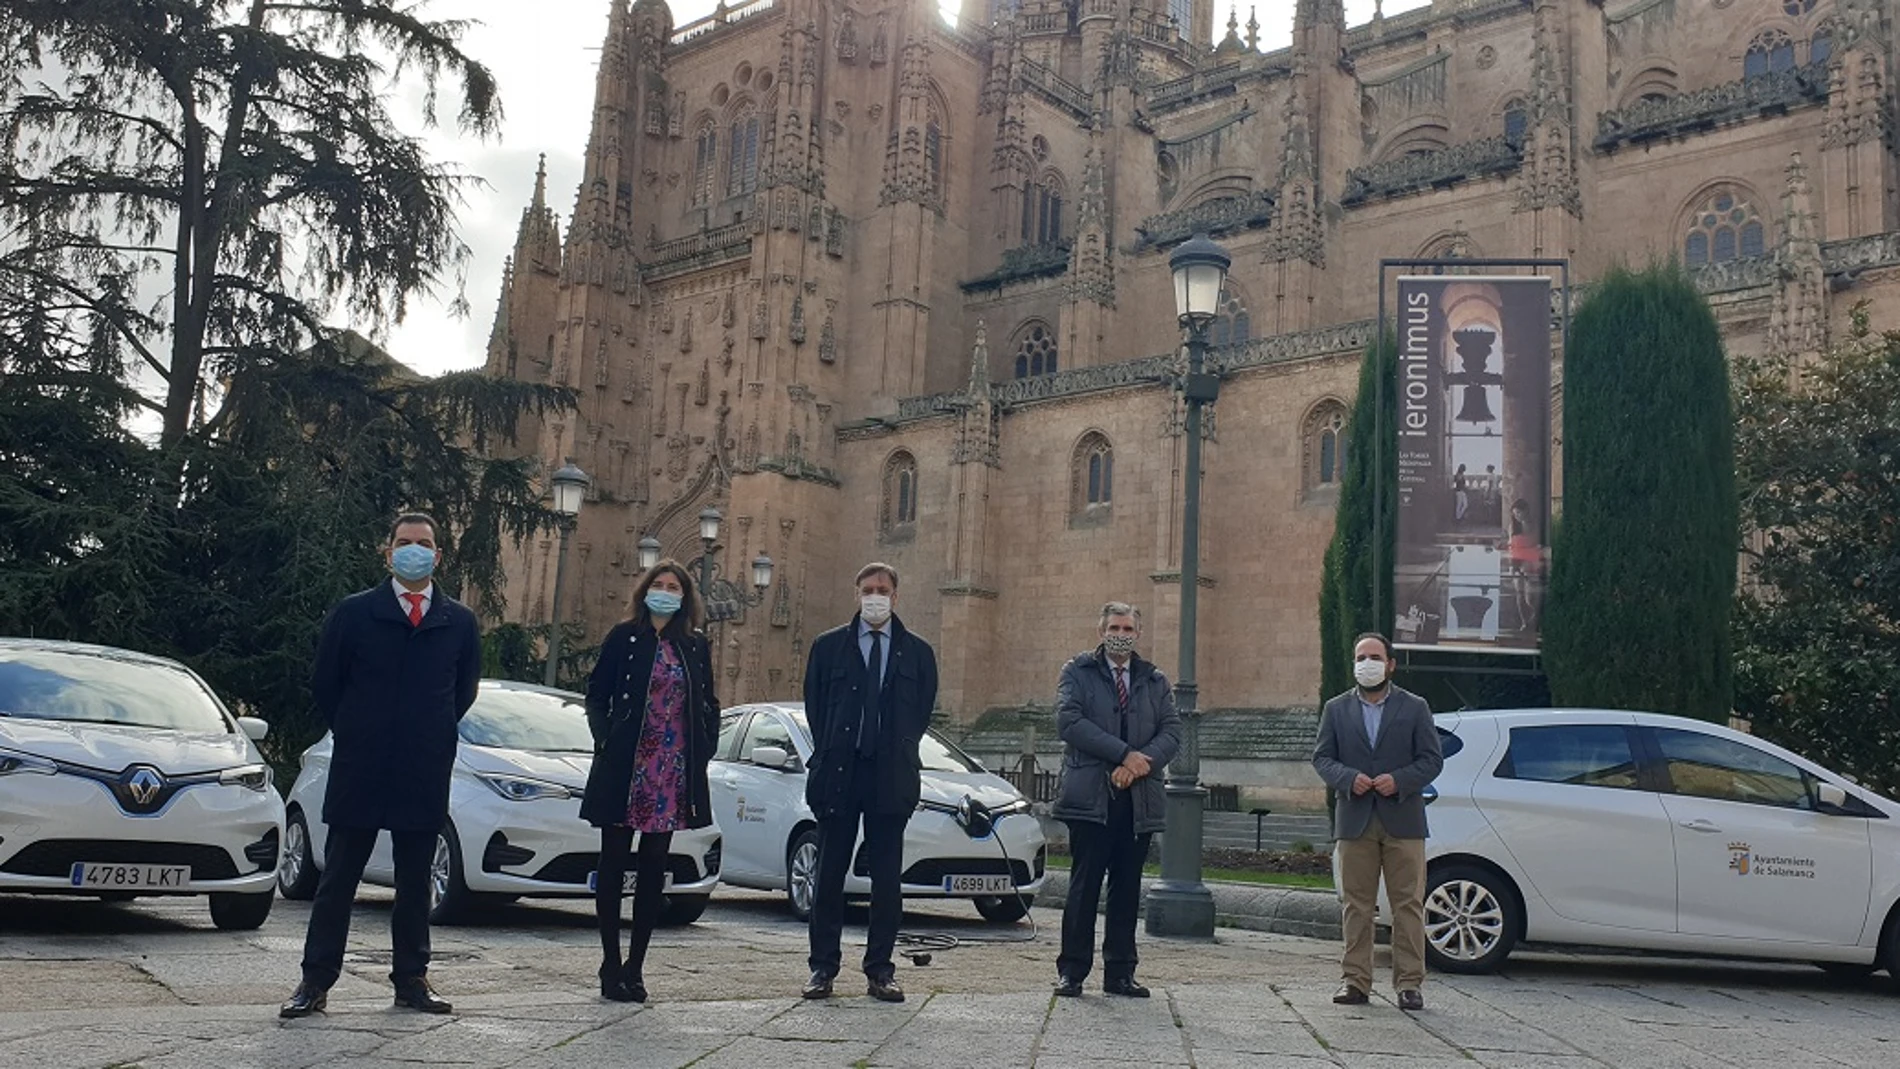 El alcalde de Salamanca, Carlos García Carbayo, y miembros de su equipo municipal, junto con los nuevos vehículos